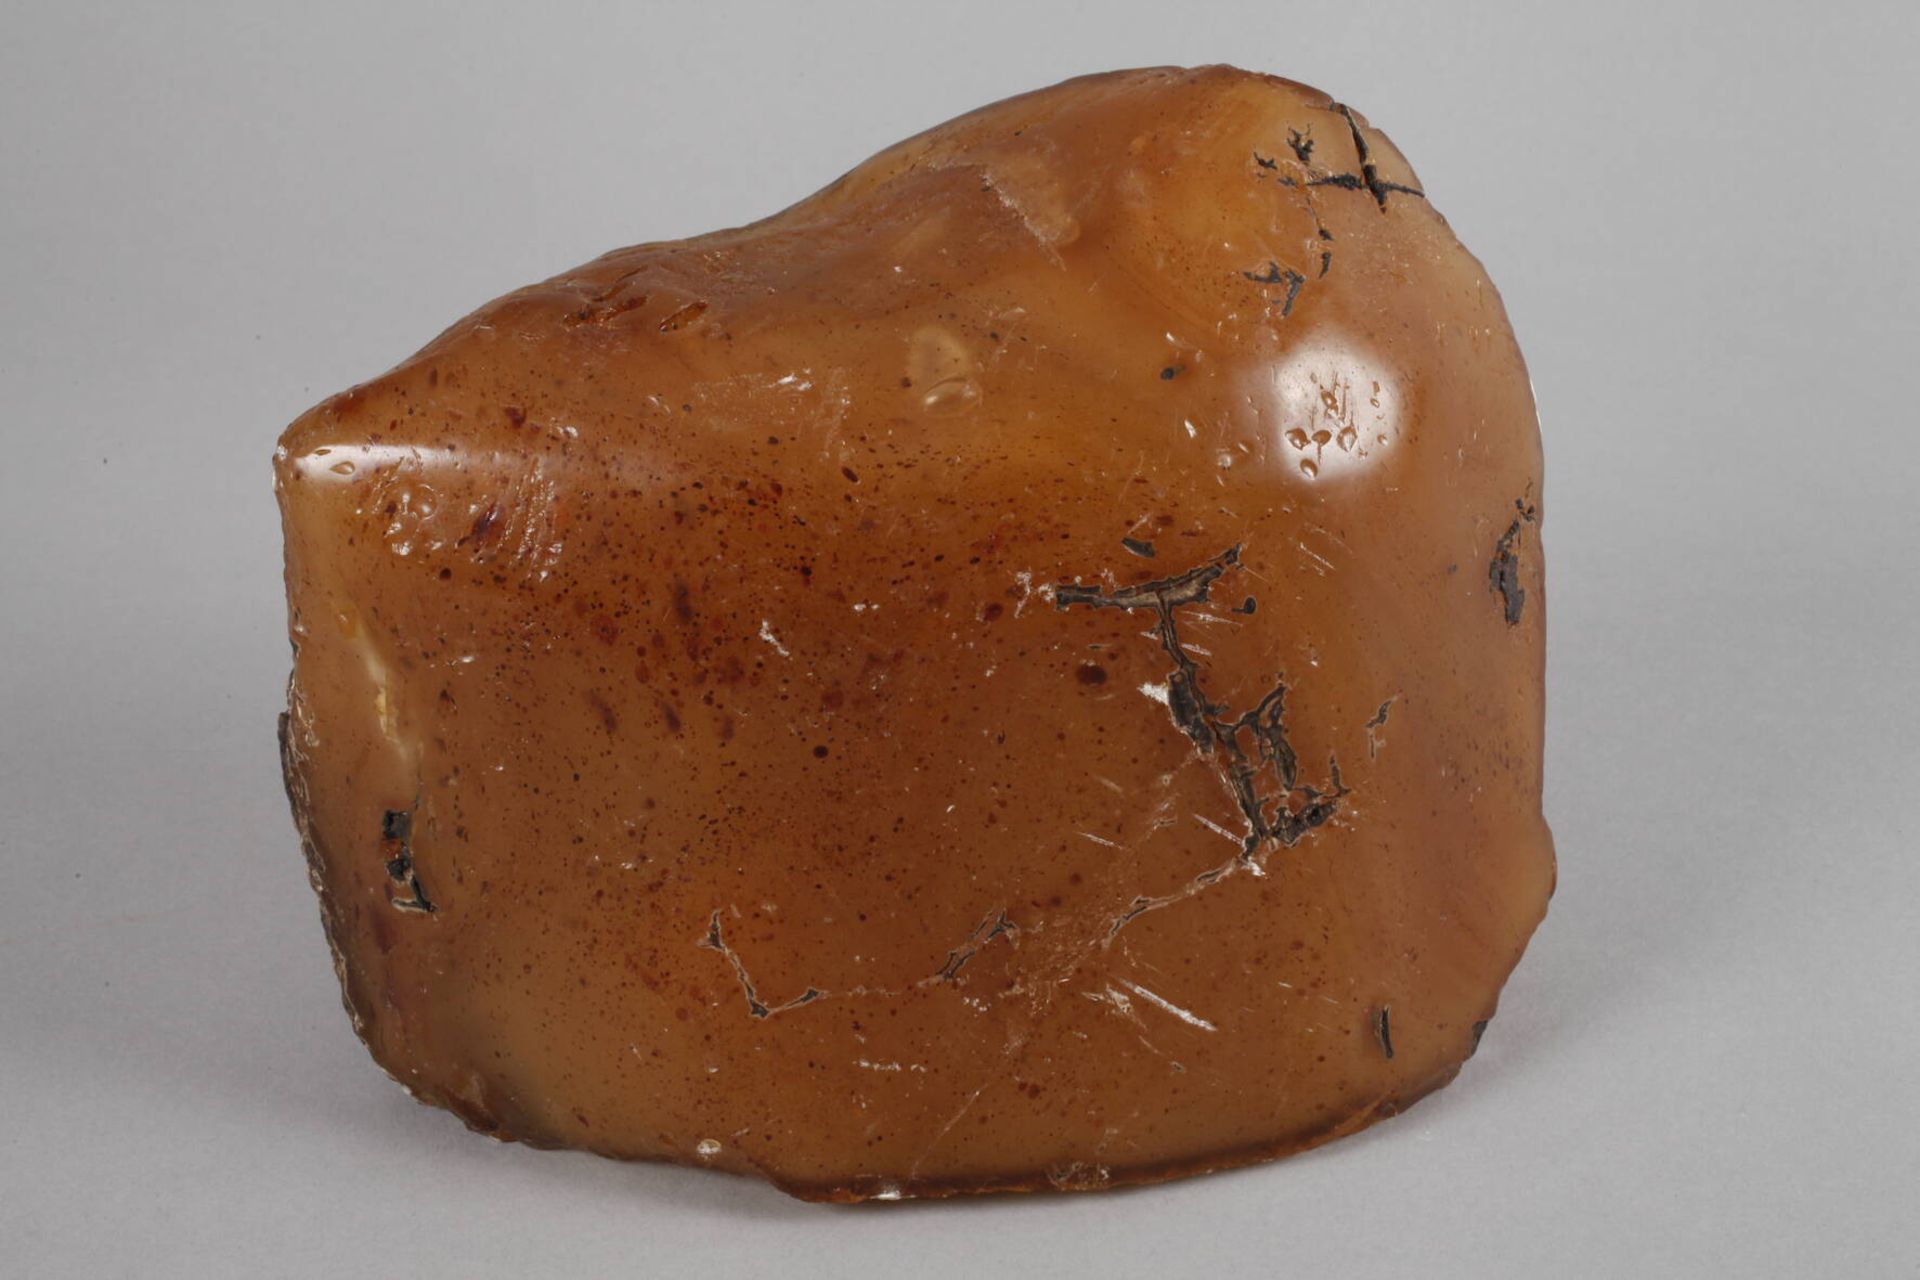 Übergroßer BernsteinAlter unbestimmt, Rohbernstein von außergewöhnlicher Größe, L 25 cm, G ca. - Bild 2 aus 5